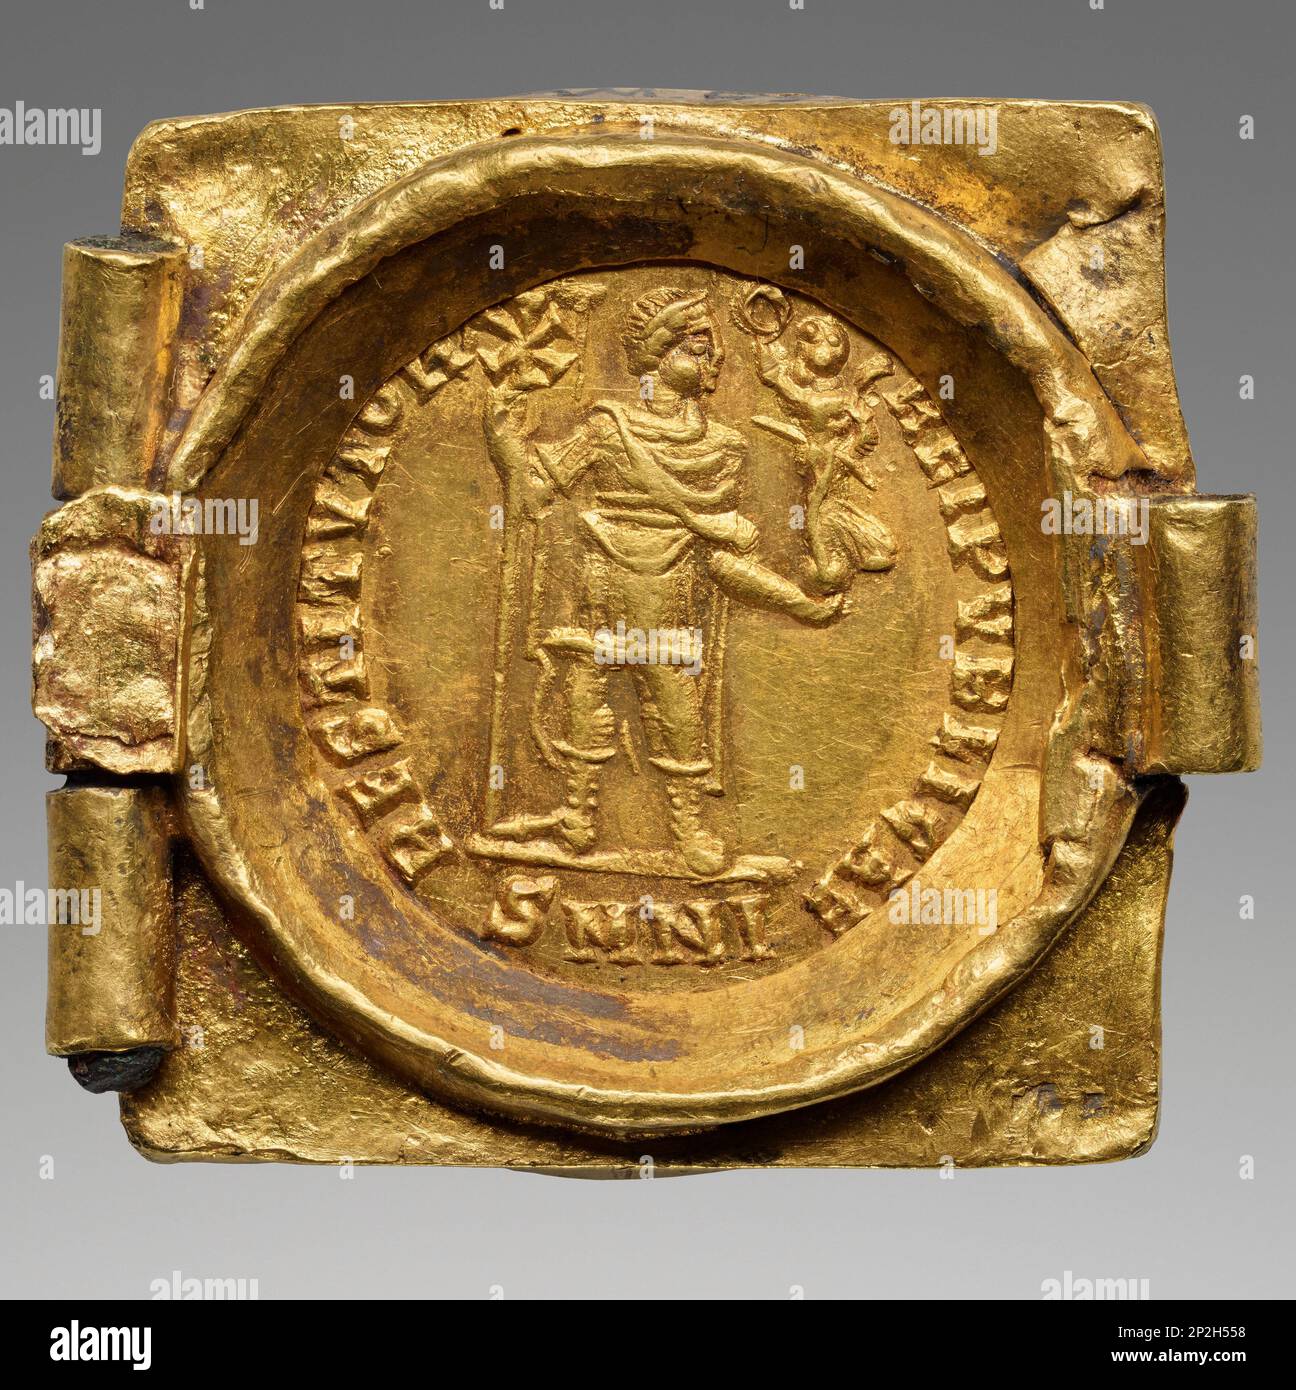 Verbindung von einem Münzgürtel: Kaiser mit Vexillum und Krönung des Sieges, 379-395. Gefunden in der Sammlung des J. Paul Getty Museum, Los Angeles. Stockfoto